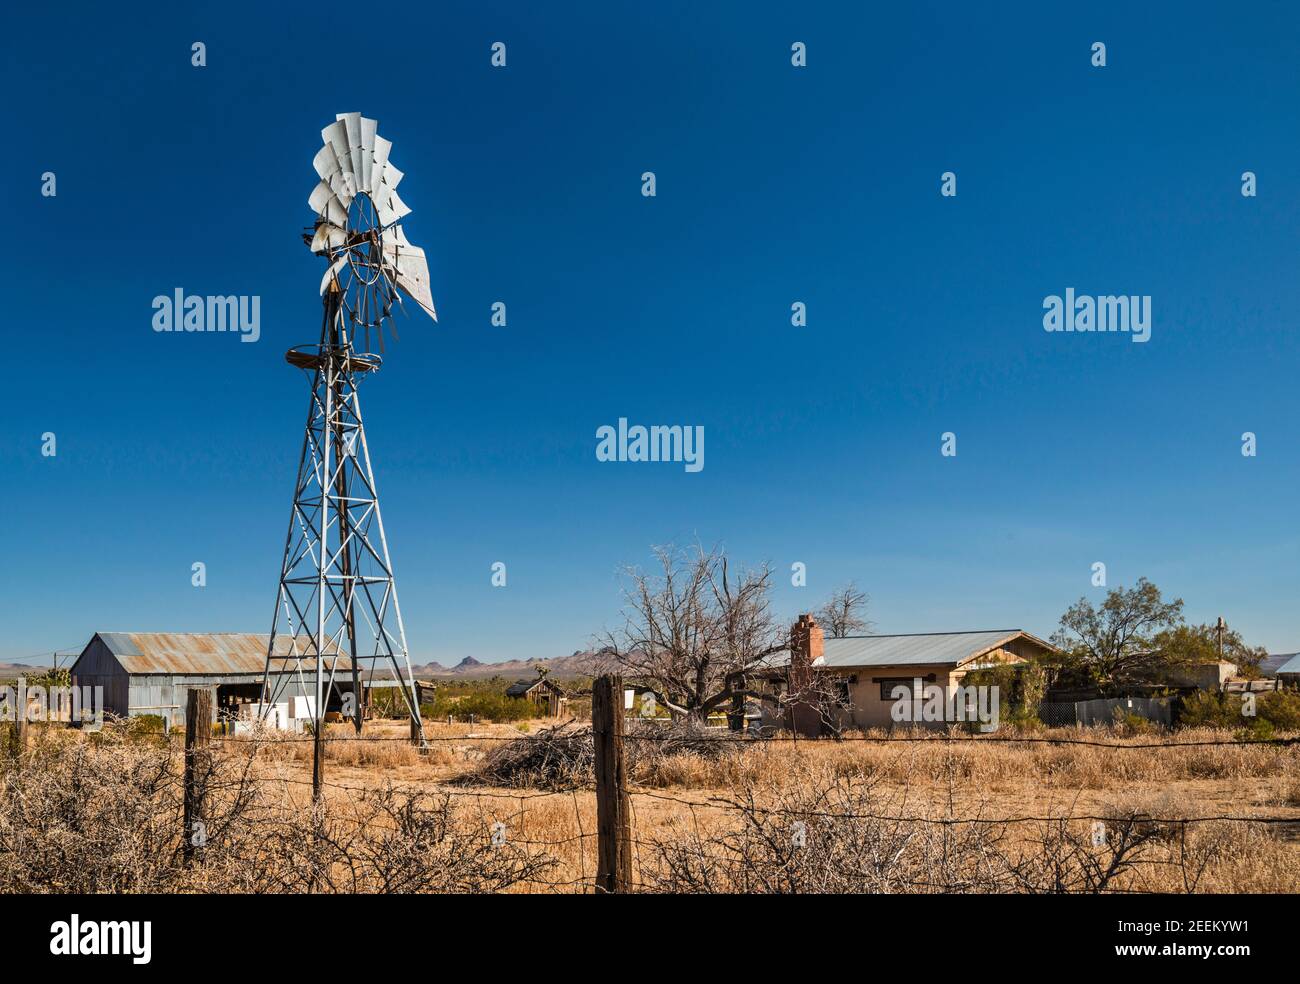 Pompe à eau de type Aermotor au ranch du site de Lanfair, Lanfair Valley, réserve nationale de Mojave, Californie, États-Unis Banque D'Images